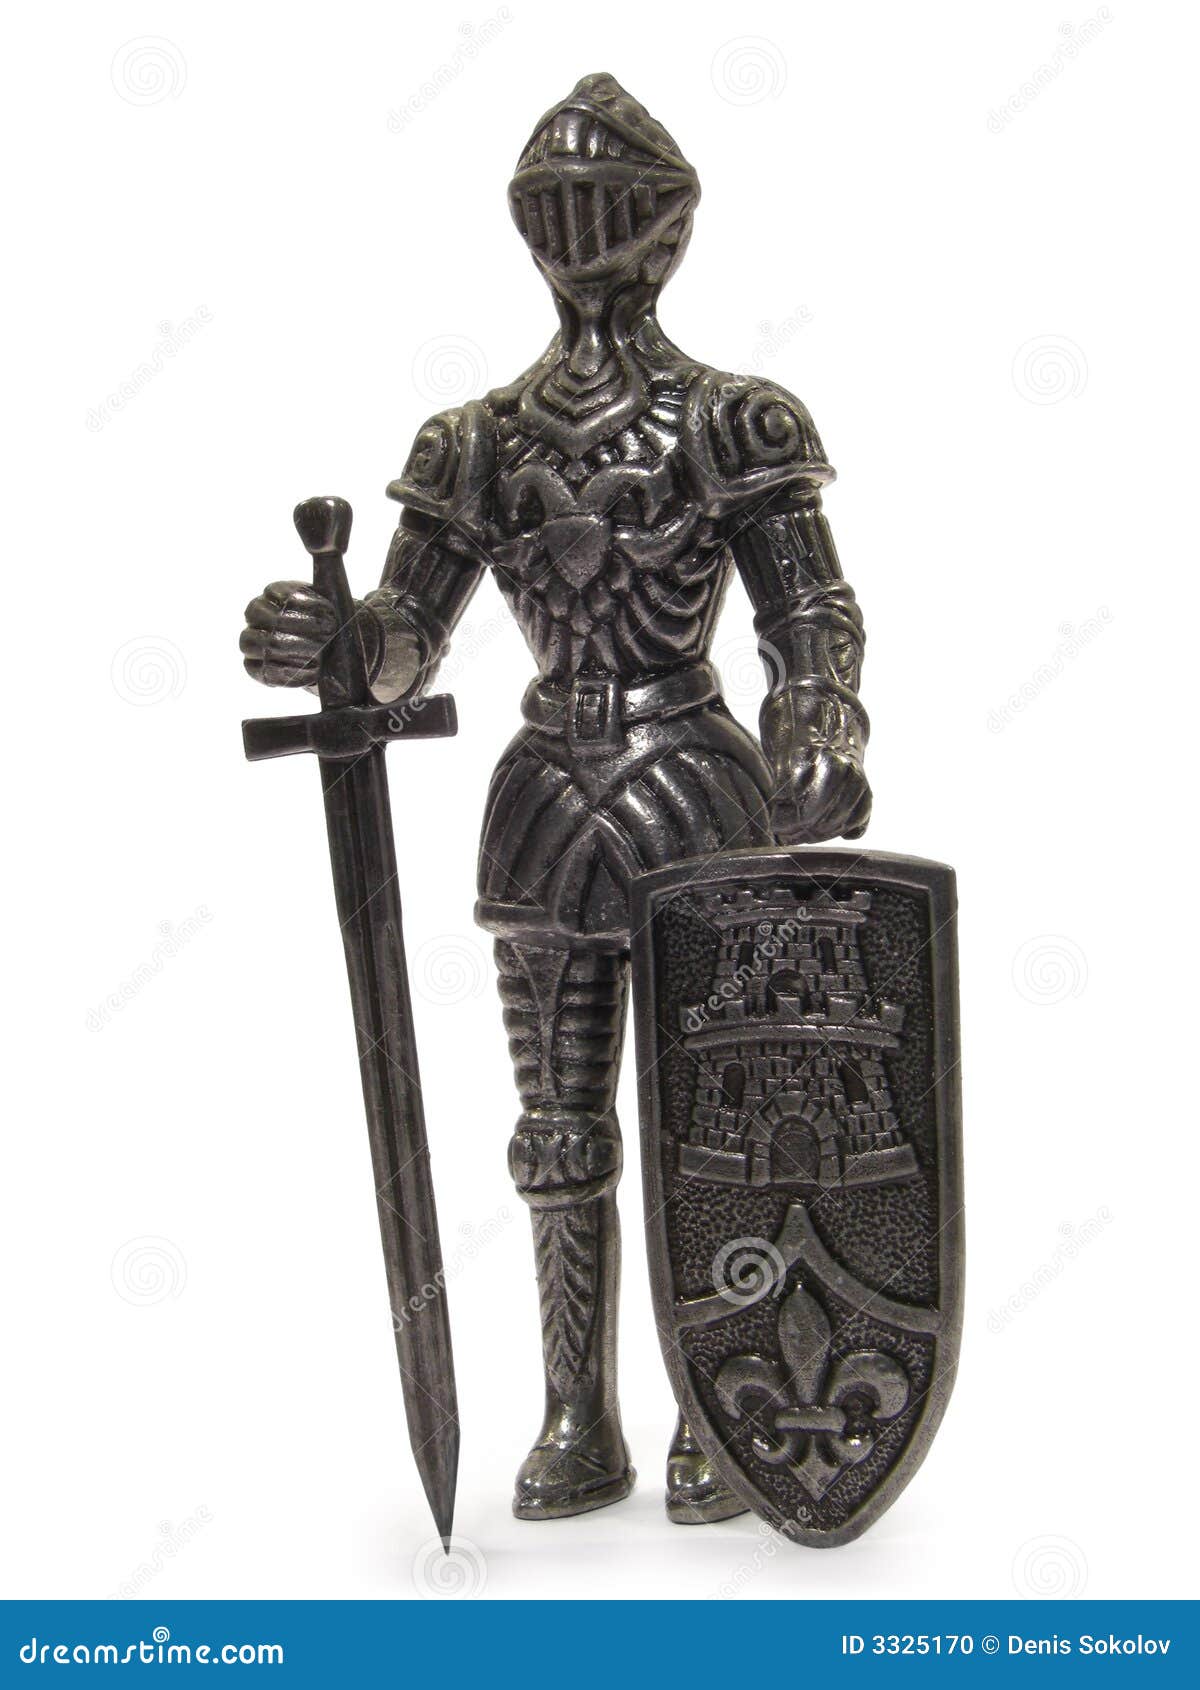 knight statuette